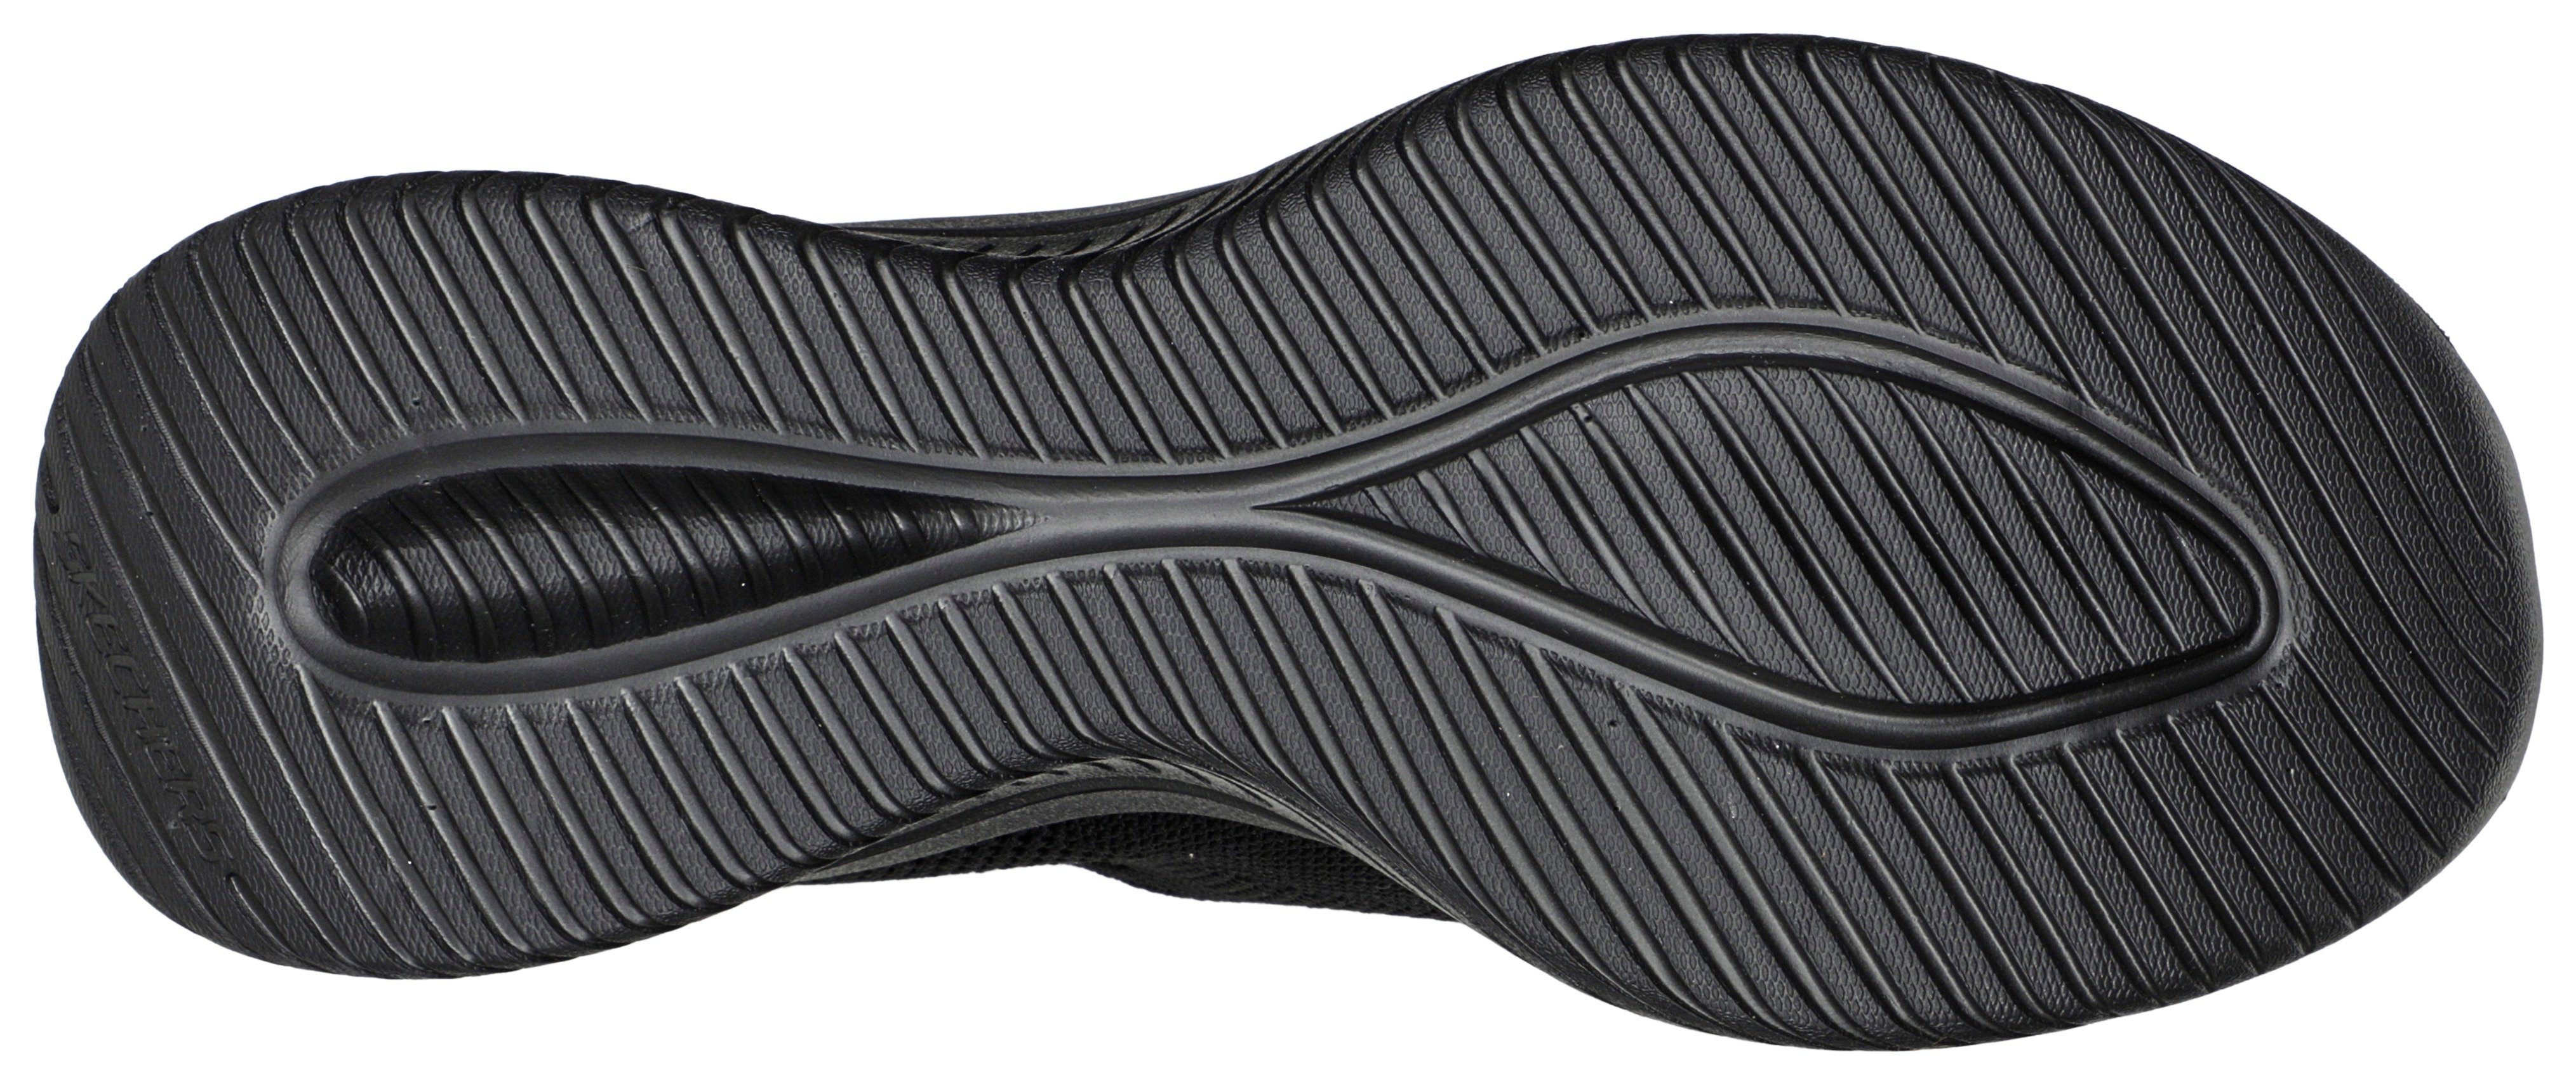 Skechers ULTRA FLEX schwarz Sneaker Slip-On Slip mit Einschlupf 3.0 für leichten Ins-Funktion